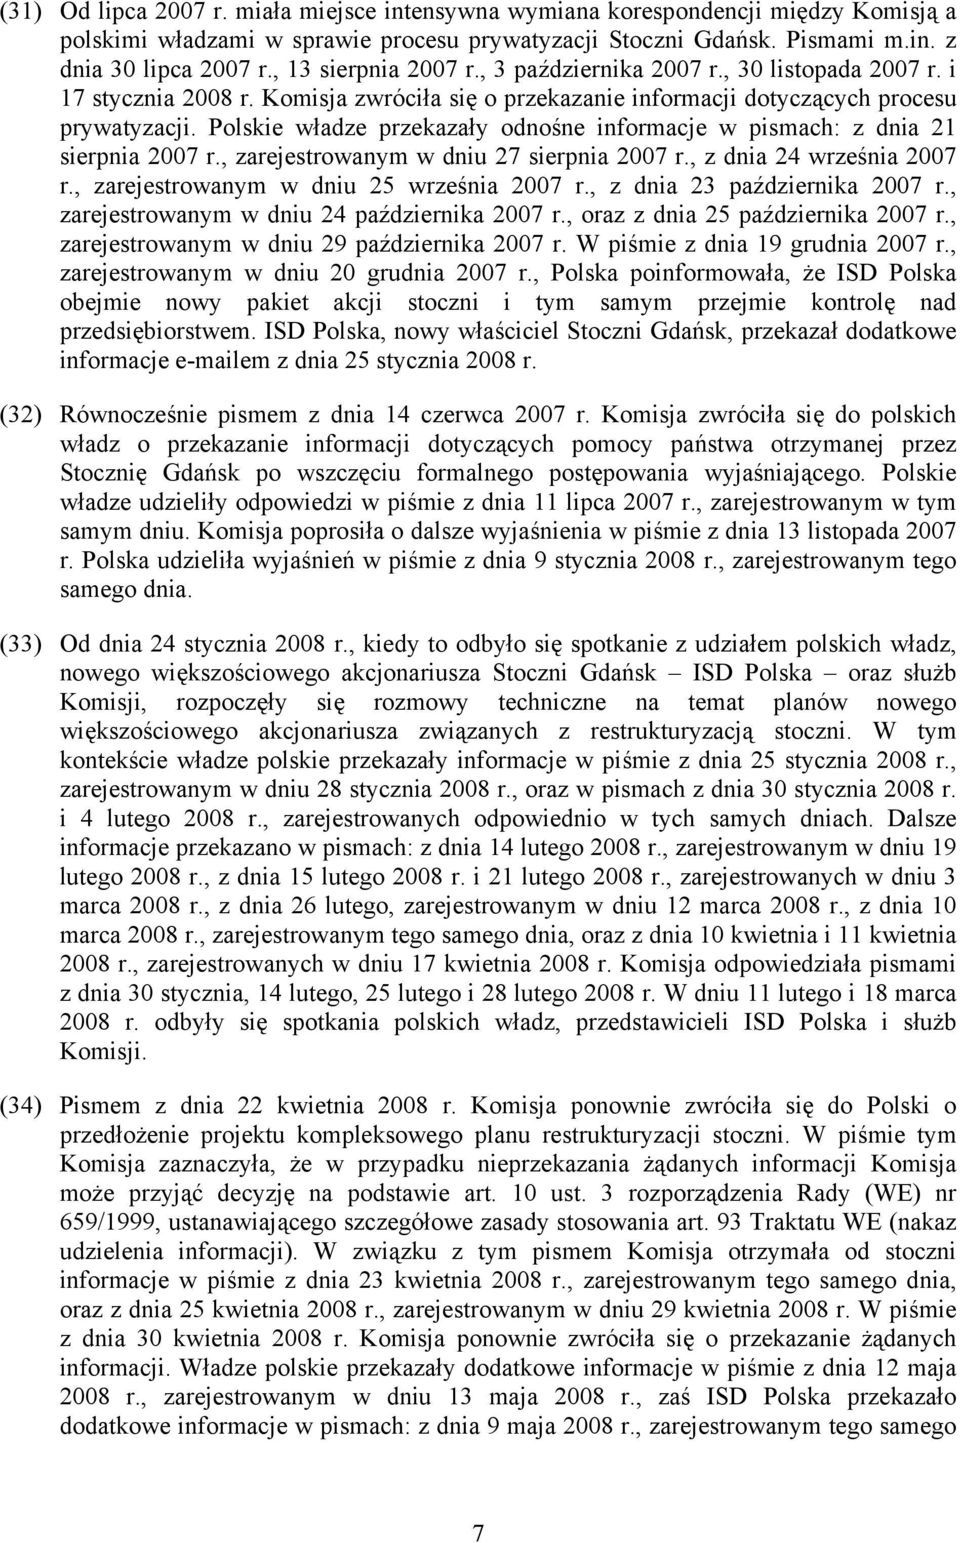 Polskie władze przekazały odnośne informacje w pismach: z dnia 21 sierpnia 2007 r., zarejestrowanym w dniu 27 sierpnia 2007 r., z dnia 24 września 2007 r., zarejestrowanym w dniu 25 września 2007 r.